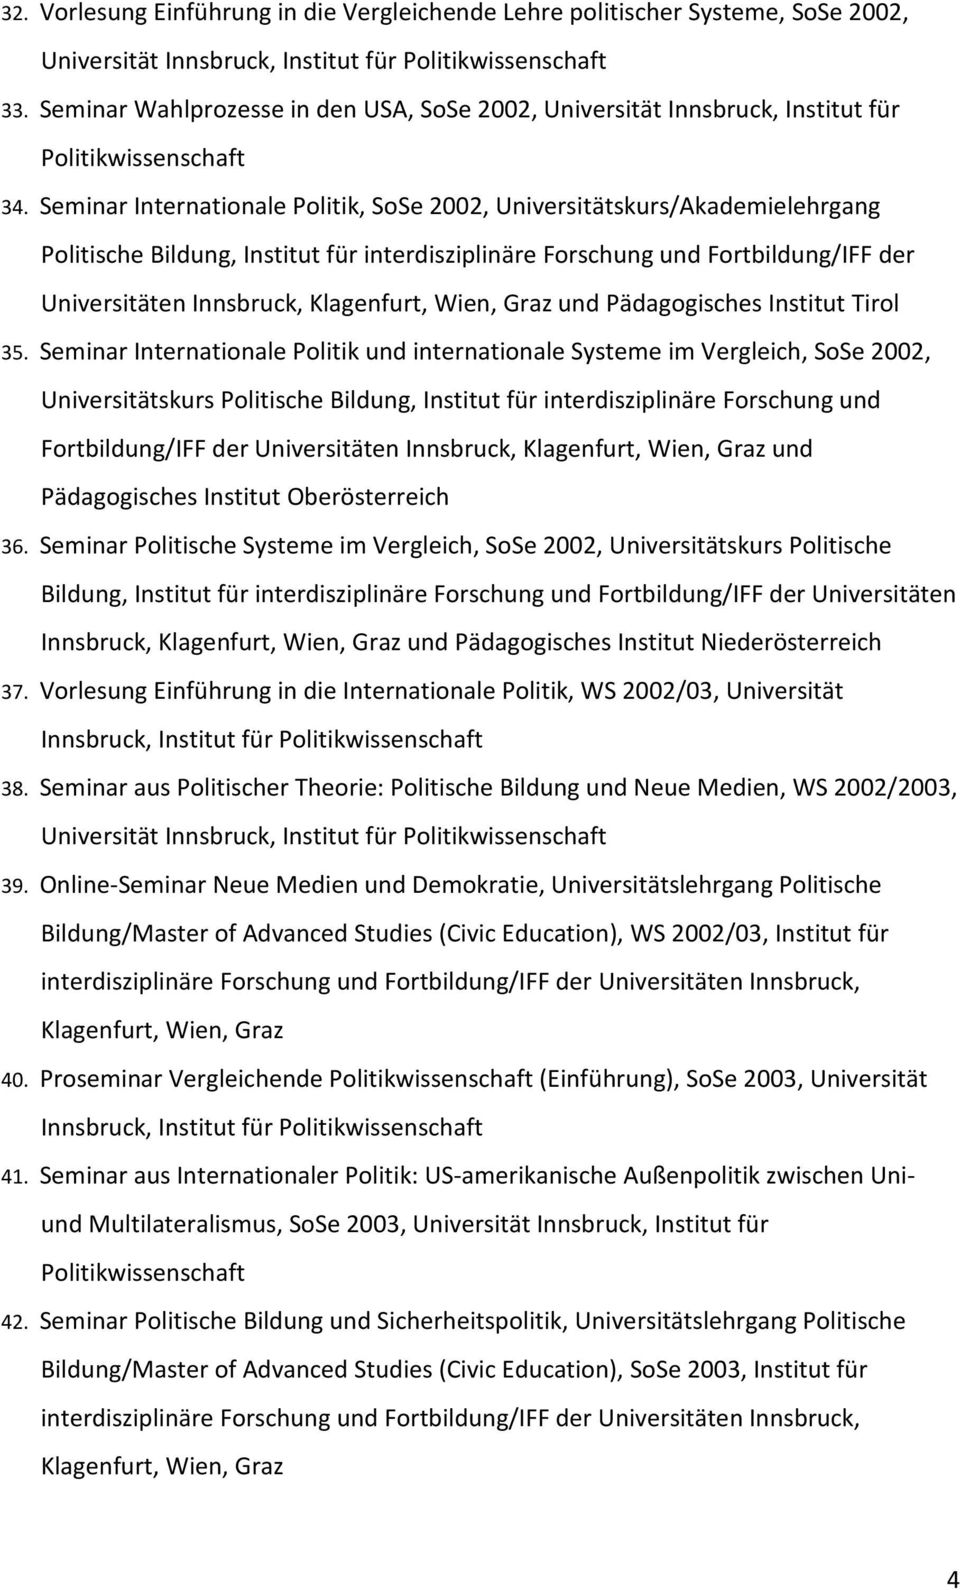 Seminar Internationale Politik, SoSe 2002, Universitätskurs/Akademielehrgang Politische Bildung, Institut für interdisziplinäre Forschung und Fortbildung/IFF der Universitäten Innsbruck, und